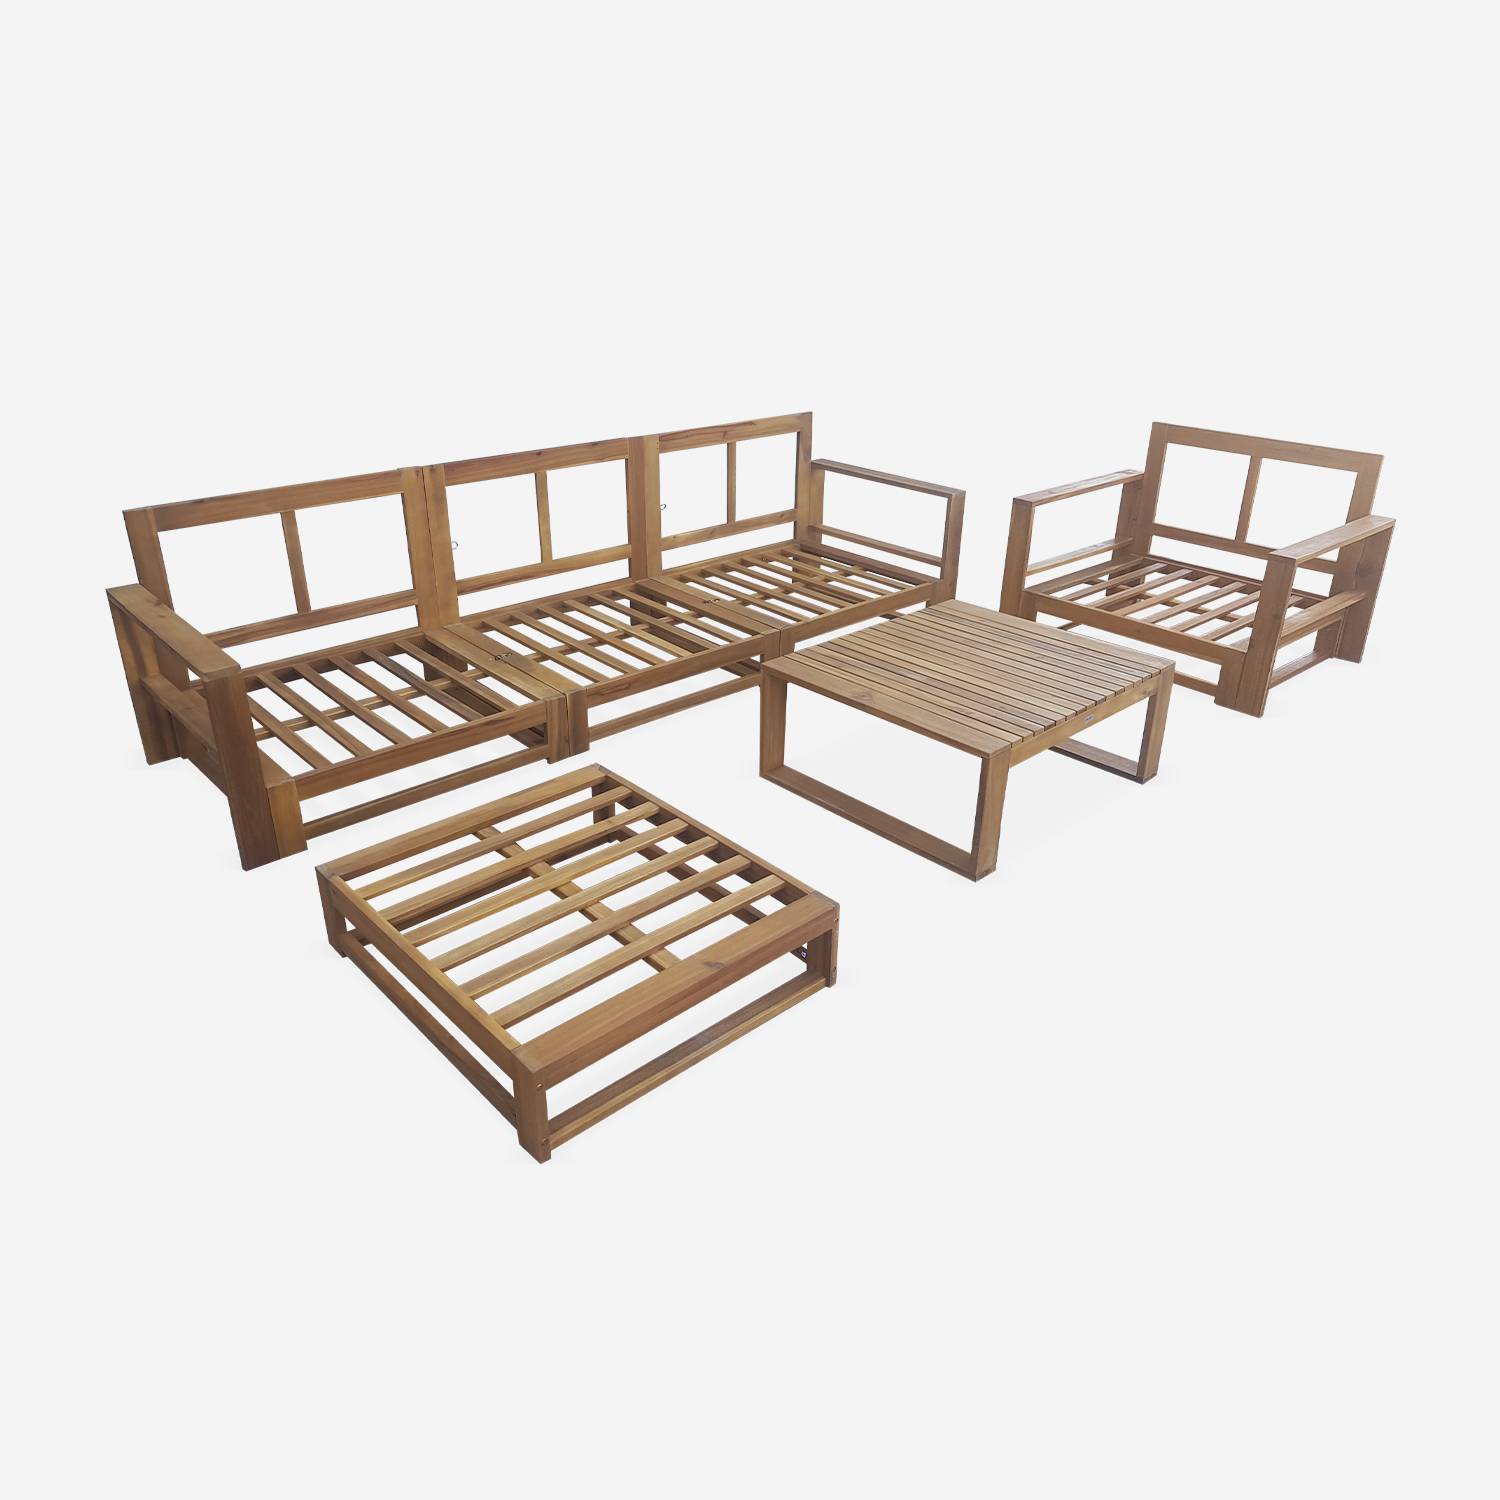 Gartengarnitur aus Holz 5 Sitze - Mendoza - beigefarbene Kissen, Sofa, Sessel und Couchtisch aus Akazie, 6 zusammenstellbare Teile, Design Photo7